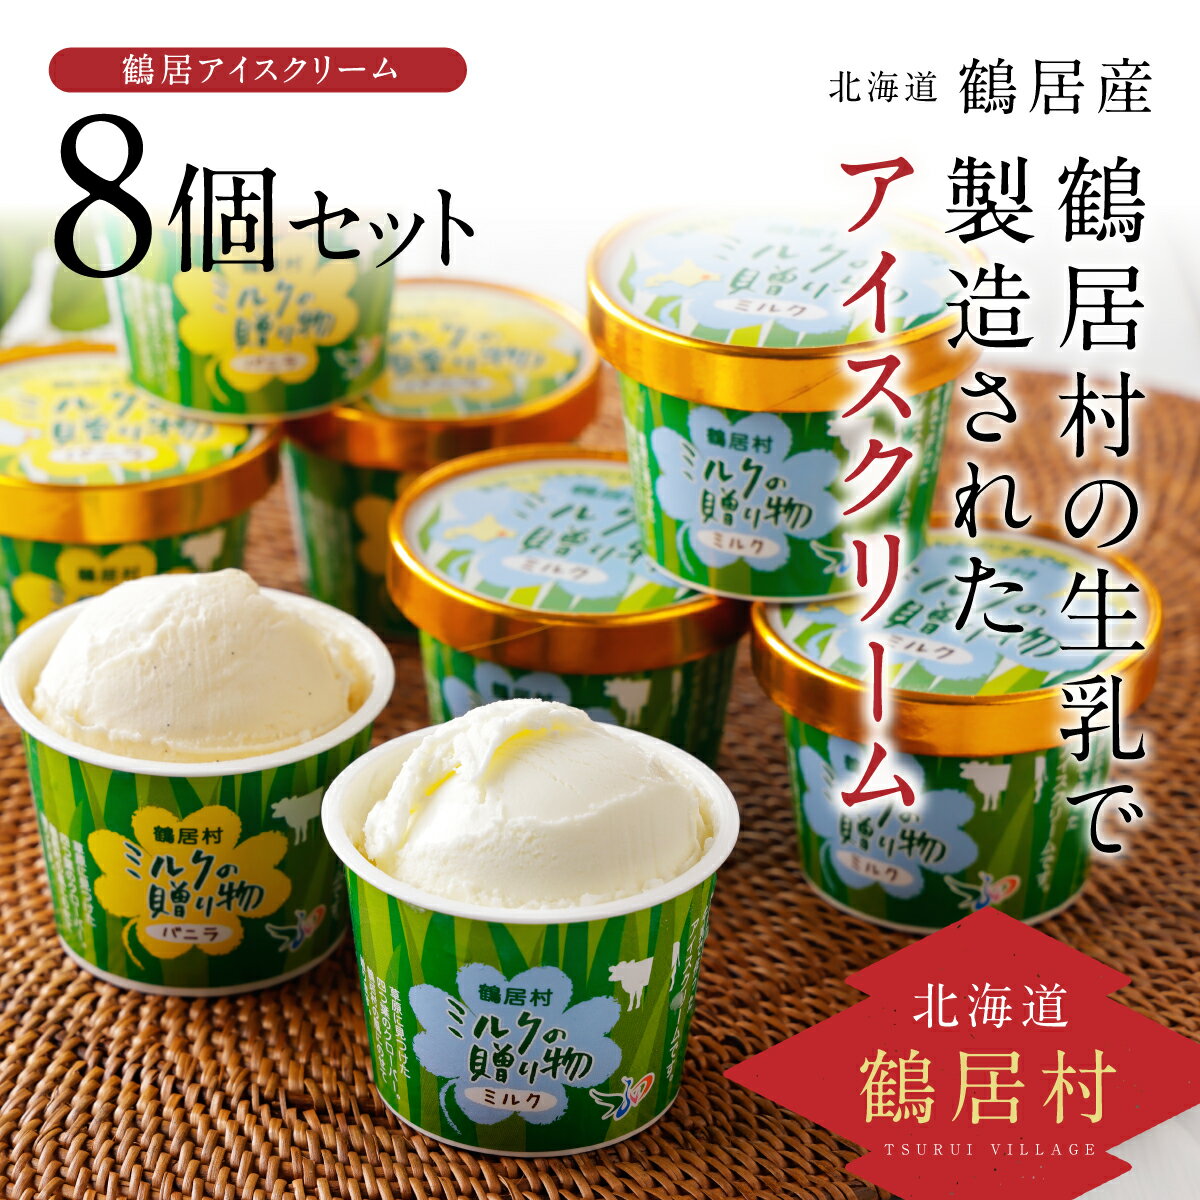 5位! 口コミ数「0件」評価「0」北海道 鶴居村 アイスクリーム ミルクの贈り物 8個セット